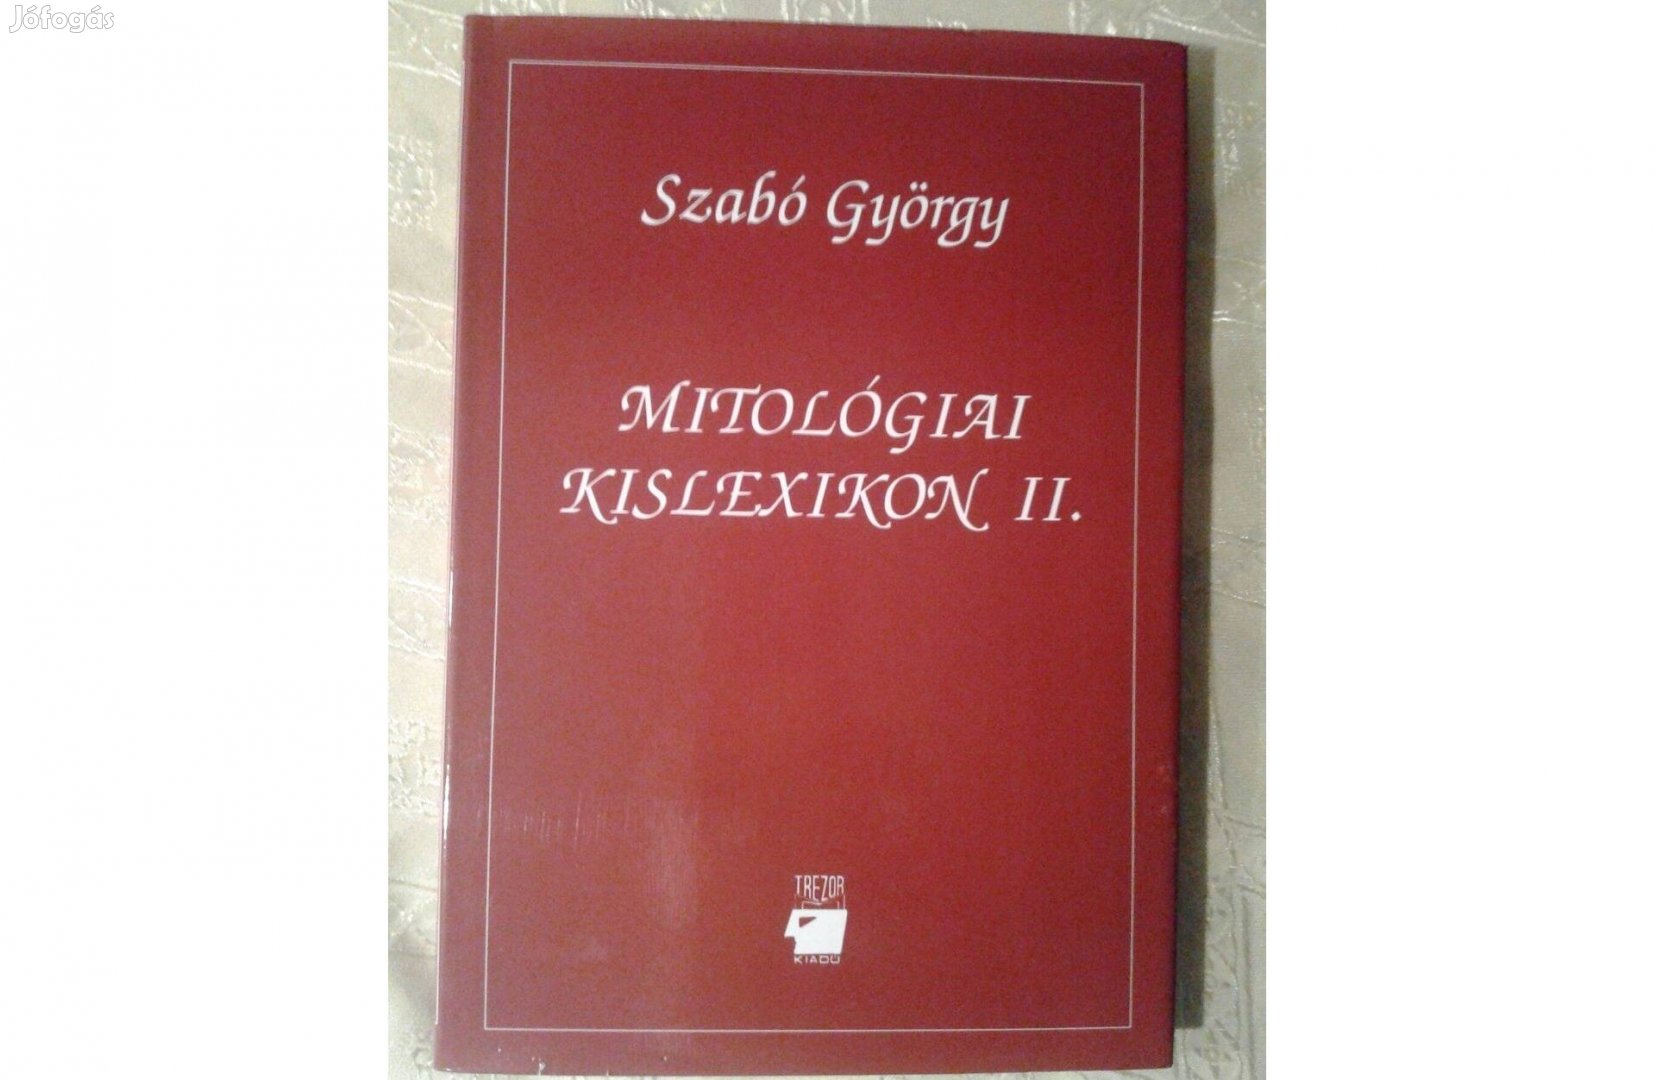 Szabó György: Mitológiai kislexikon 2 890 Ft